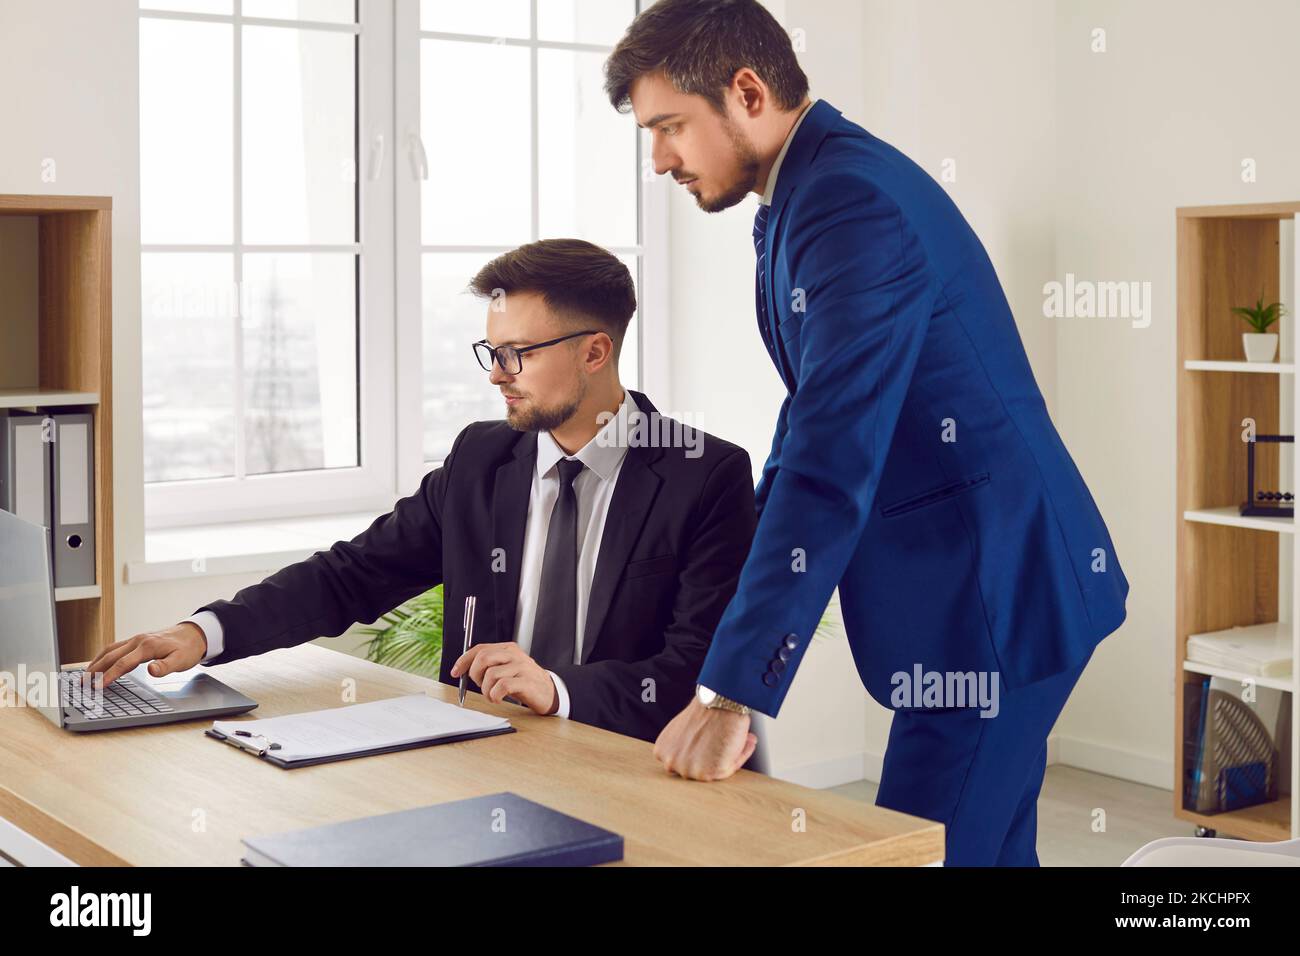 Männliche Kollegen bei der Arbeit im Büro sprechen während der Zusammenarbeit an einem gemeinsamen Geschäftsprojekt. Stockfoto